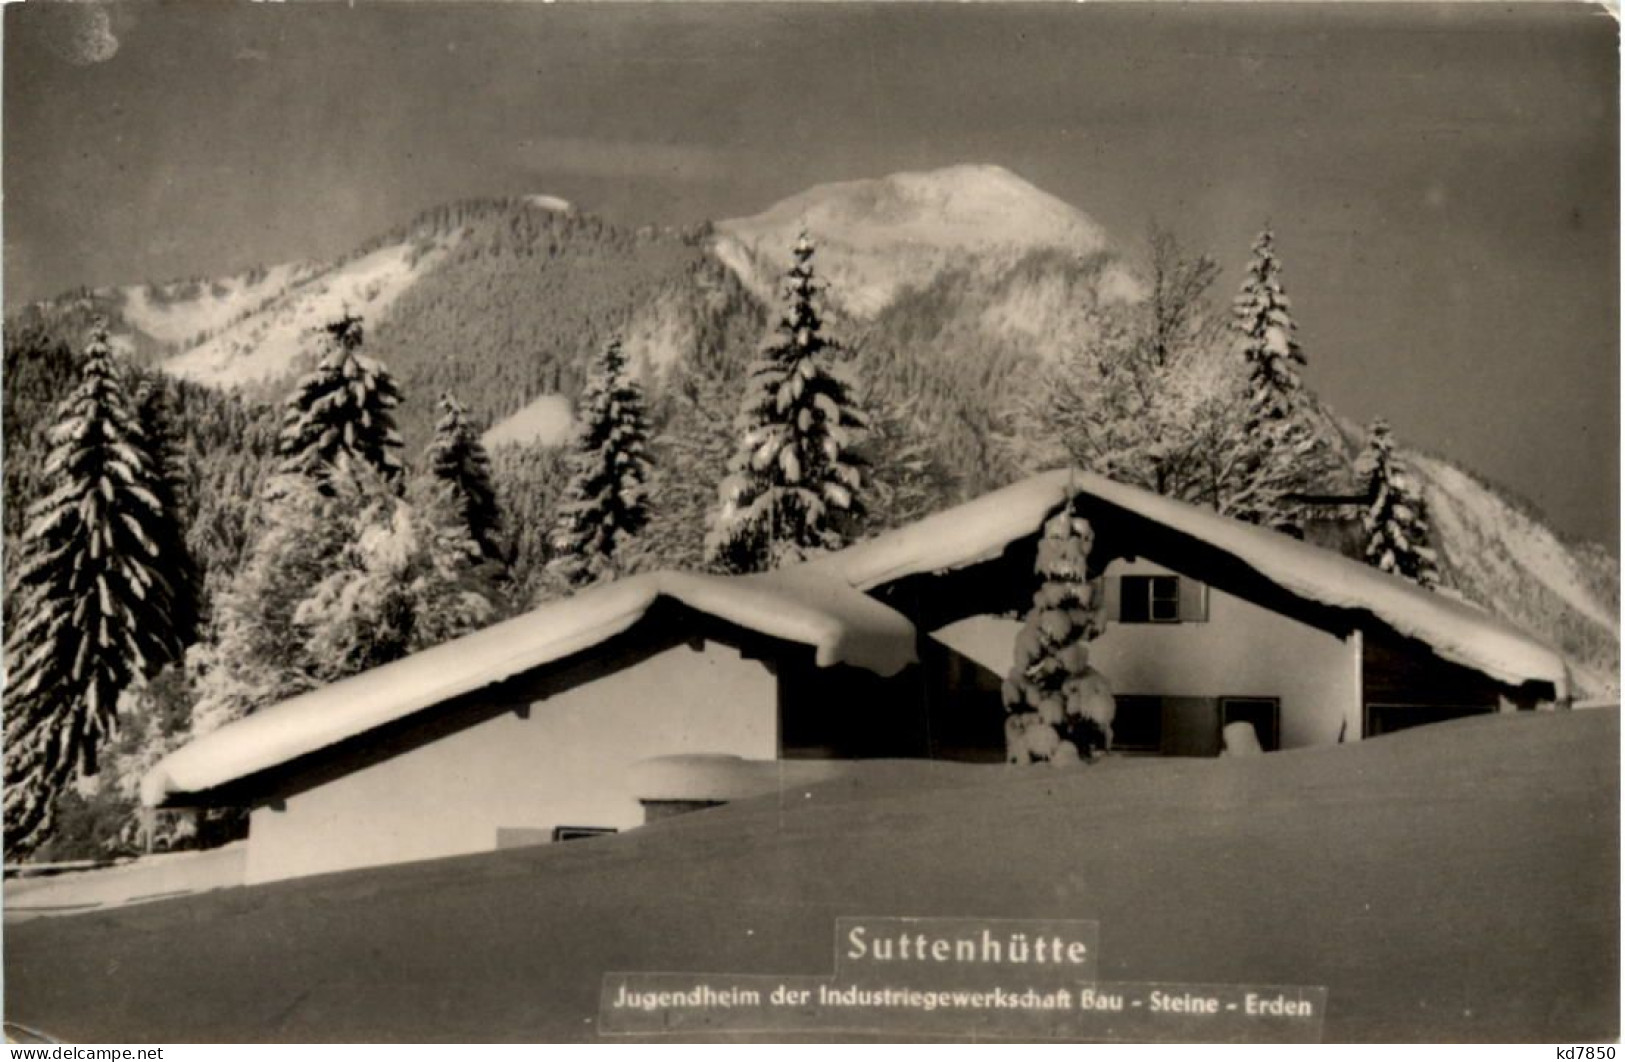 Suttenhütte, IGB Bau-Steine-Erden Jugendheim, Rottach-Egern - Miesbach